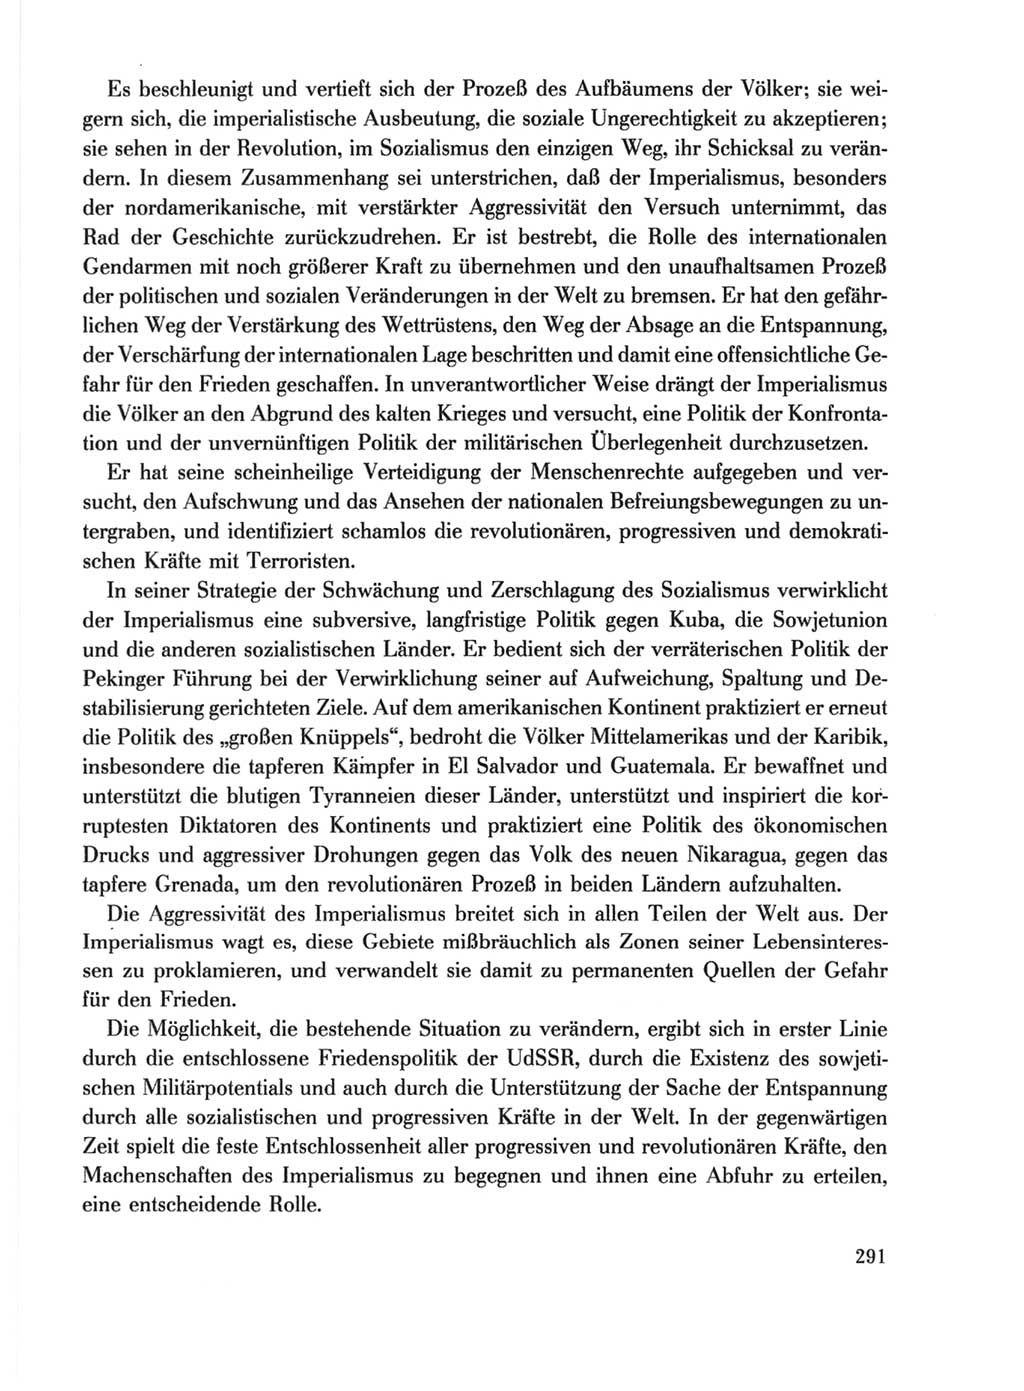 Protokoll der Verhandlungen des Ⅹ. Parteitages der Sozialistischen Einheitspartei Deutschlands (SED) [Deutsche Demokratische Republik (DDR)] 1981, Band 1, Seite 291 (Prot. Verh. Ⅹ. PT SED DDR 1981, Bd. 1, S. 291)